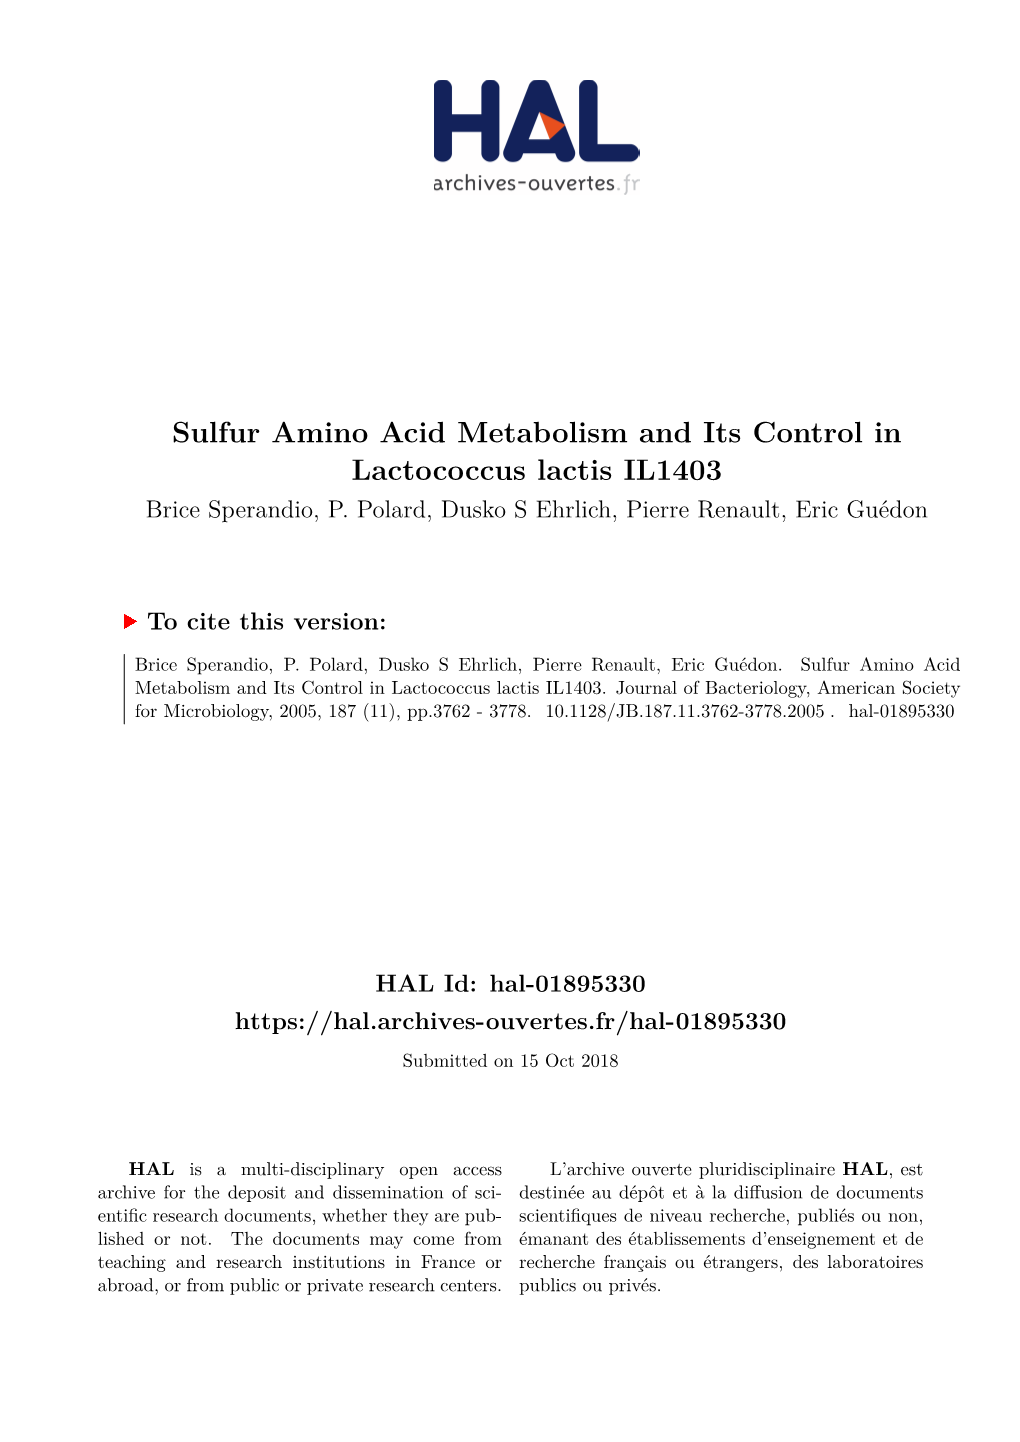 Sulfur Amino Acid Metabolism and Its Control in Lactococcus Lactis IL1403 Brice Sperandio, P